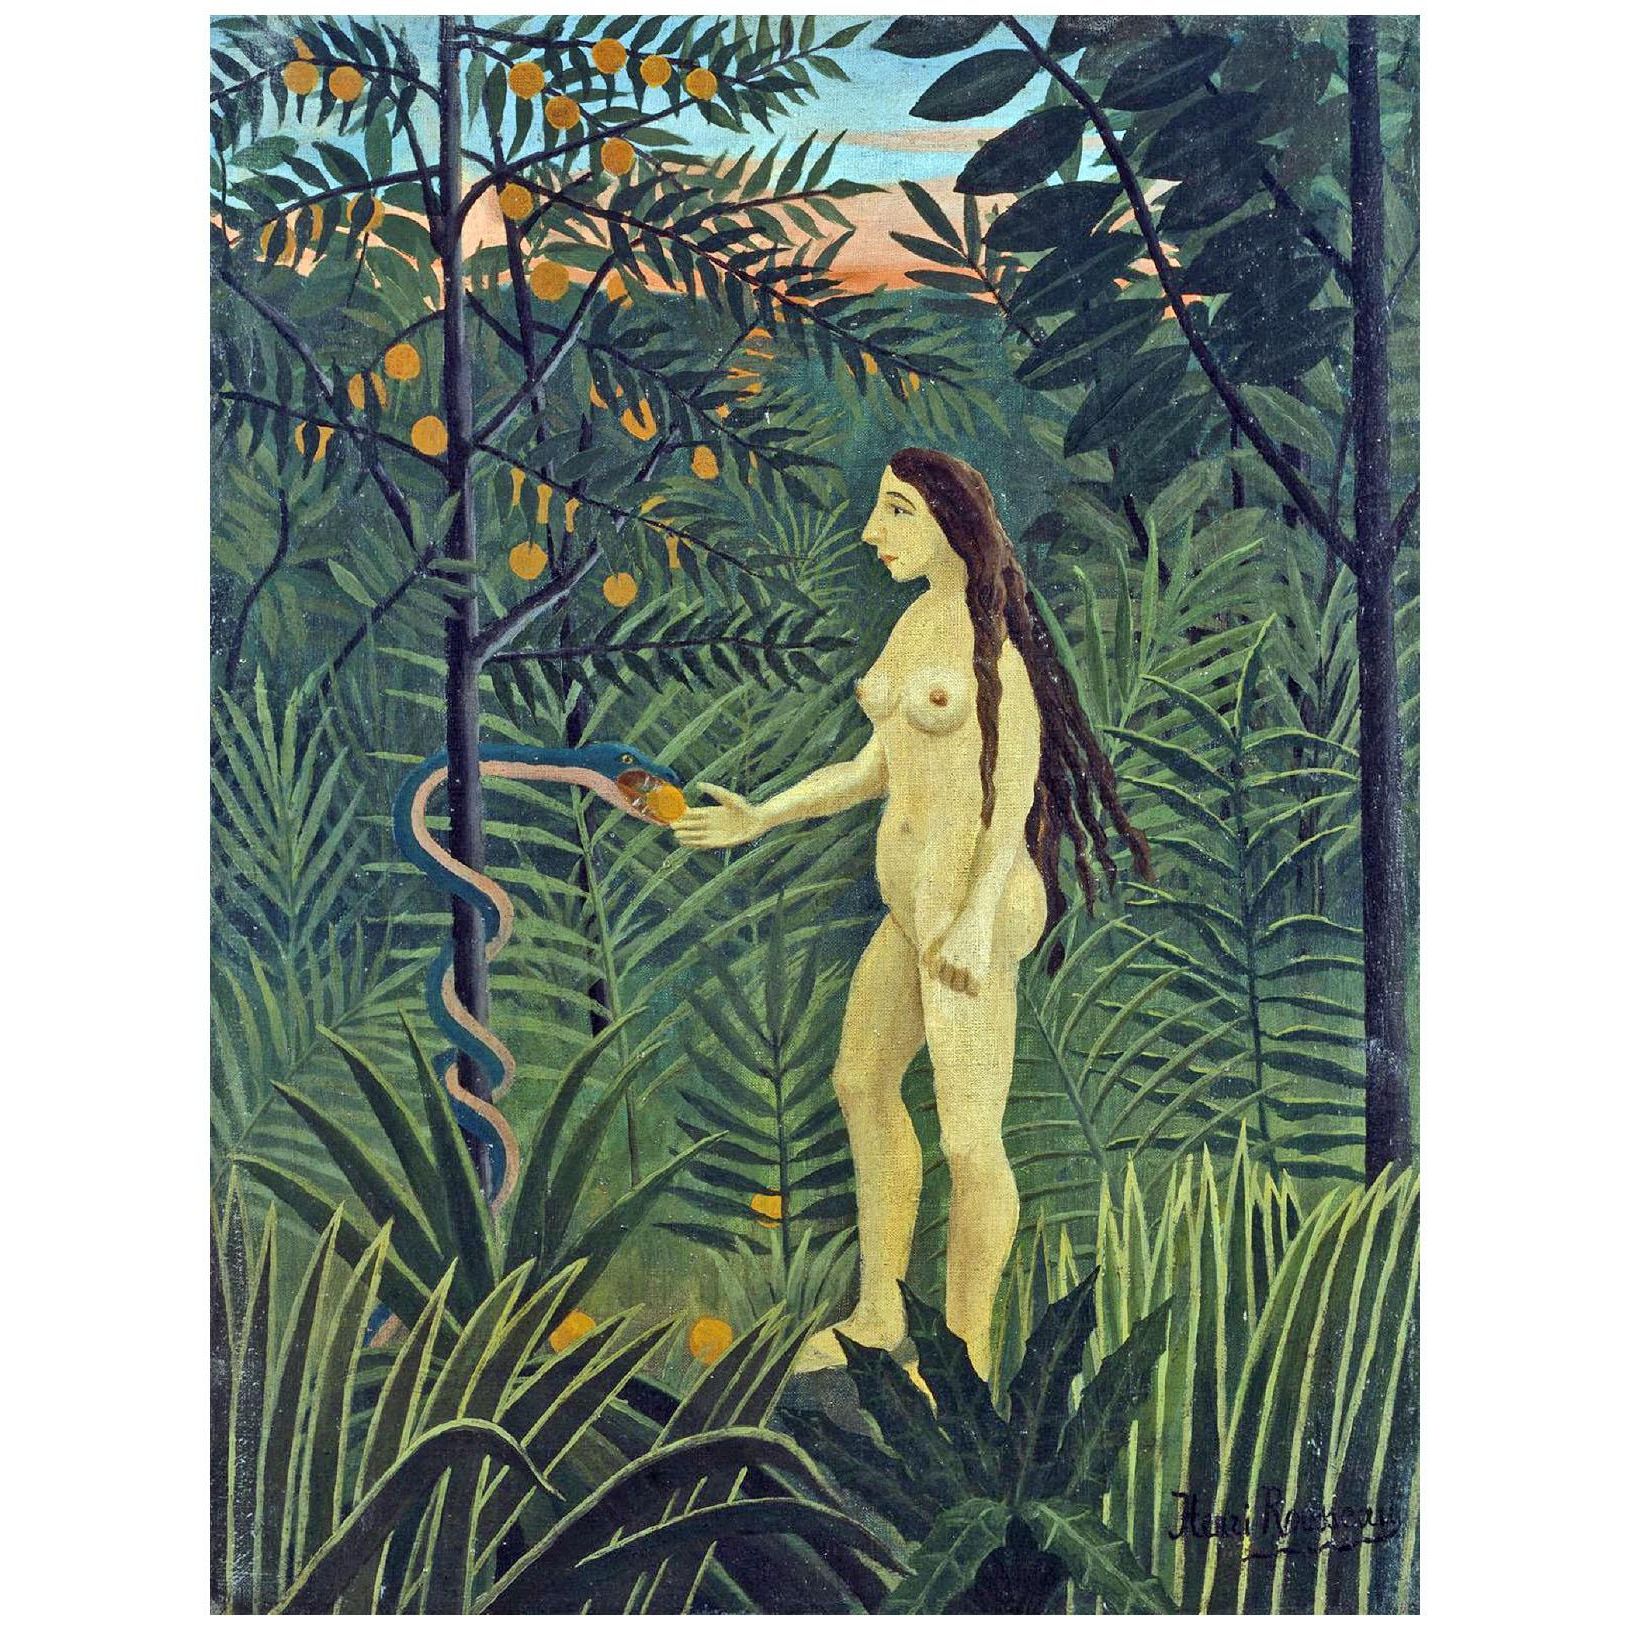 Henri Rousseau. Eve dans le paradis terrestre. 1906. Hamburger Kunsthalle